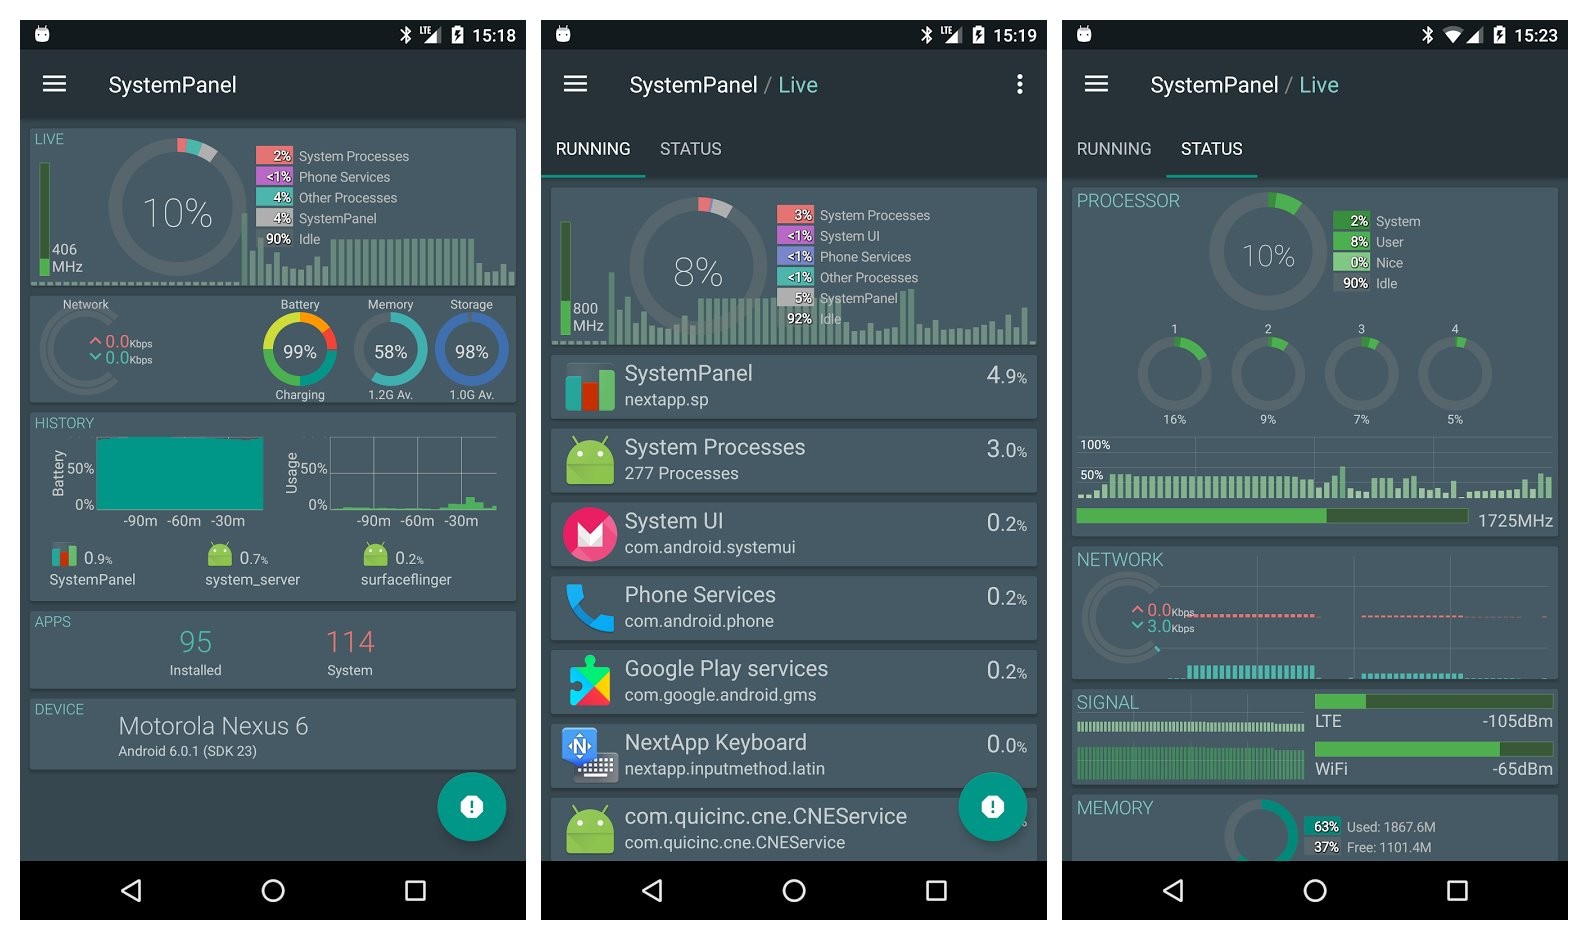 La aplicación de Android SystemPanel 2 recibe una actualización con muchas características nuevas